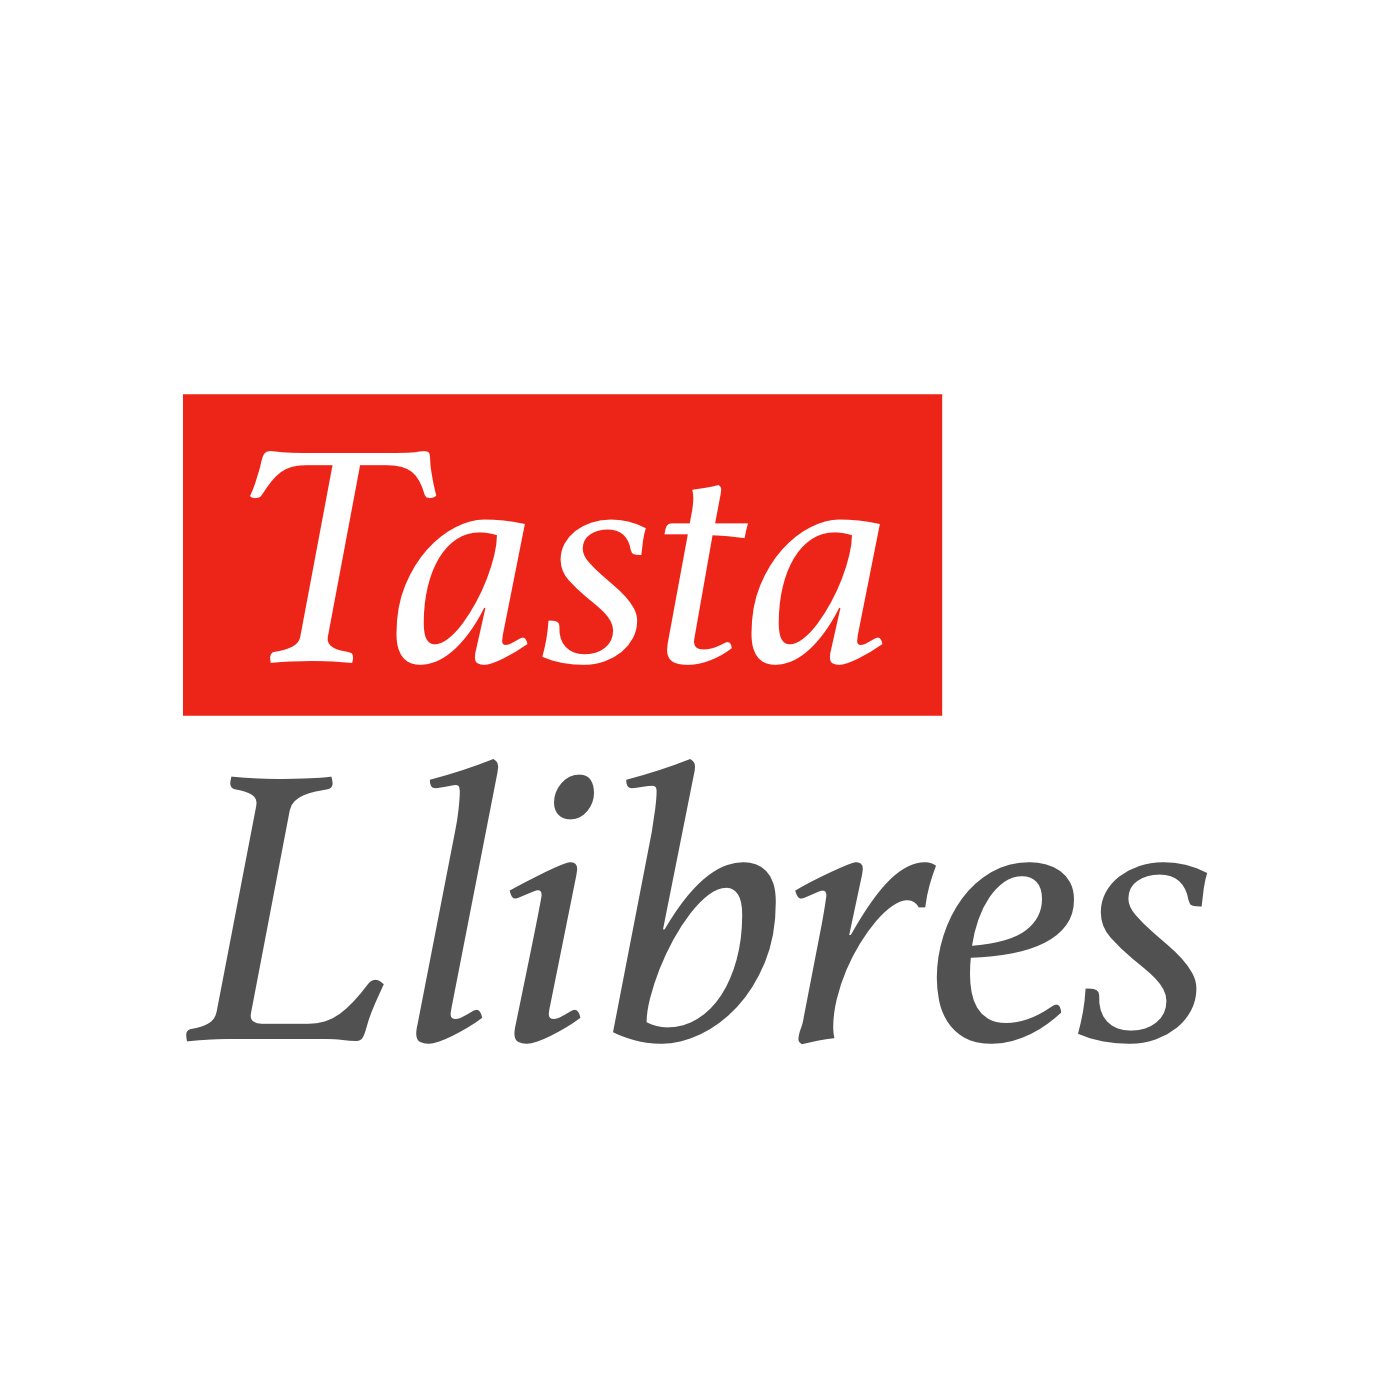 Tasta Llibres és la primera subscripció literària sorpresa en català. Emociona't amb una nova història cada mes! 📖